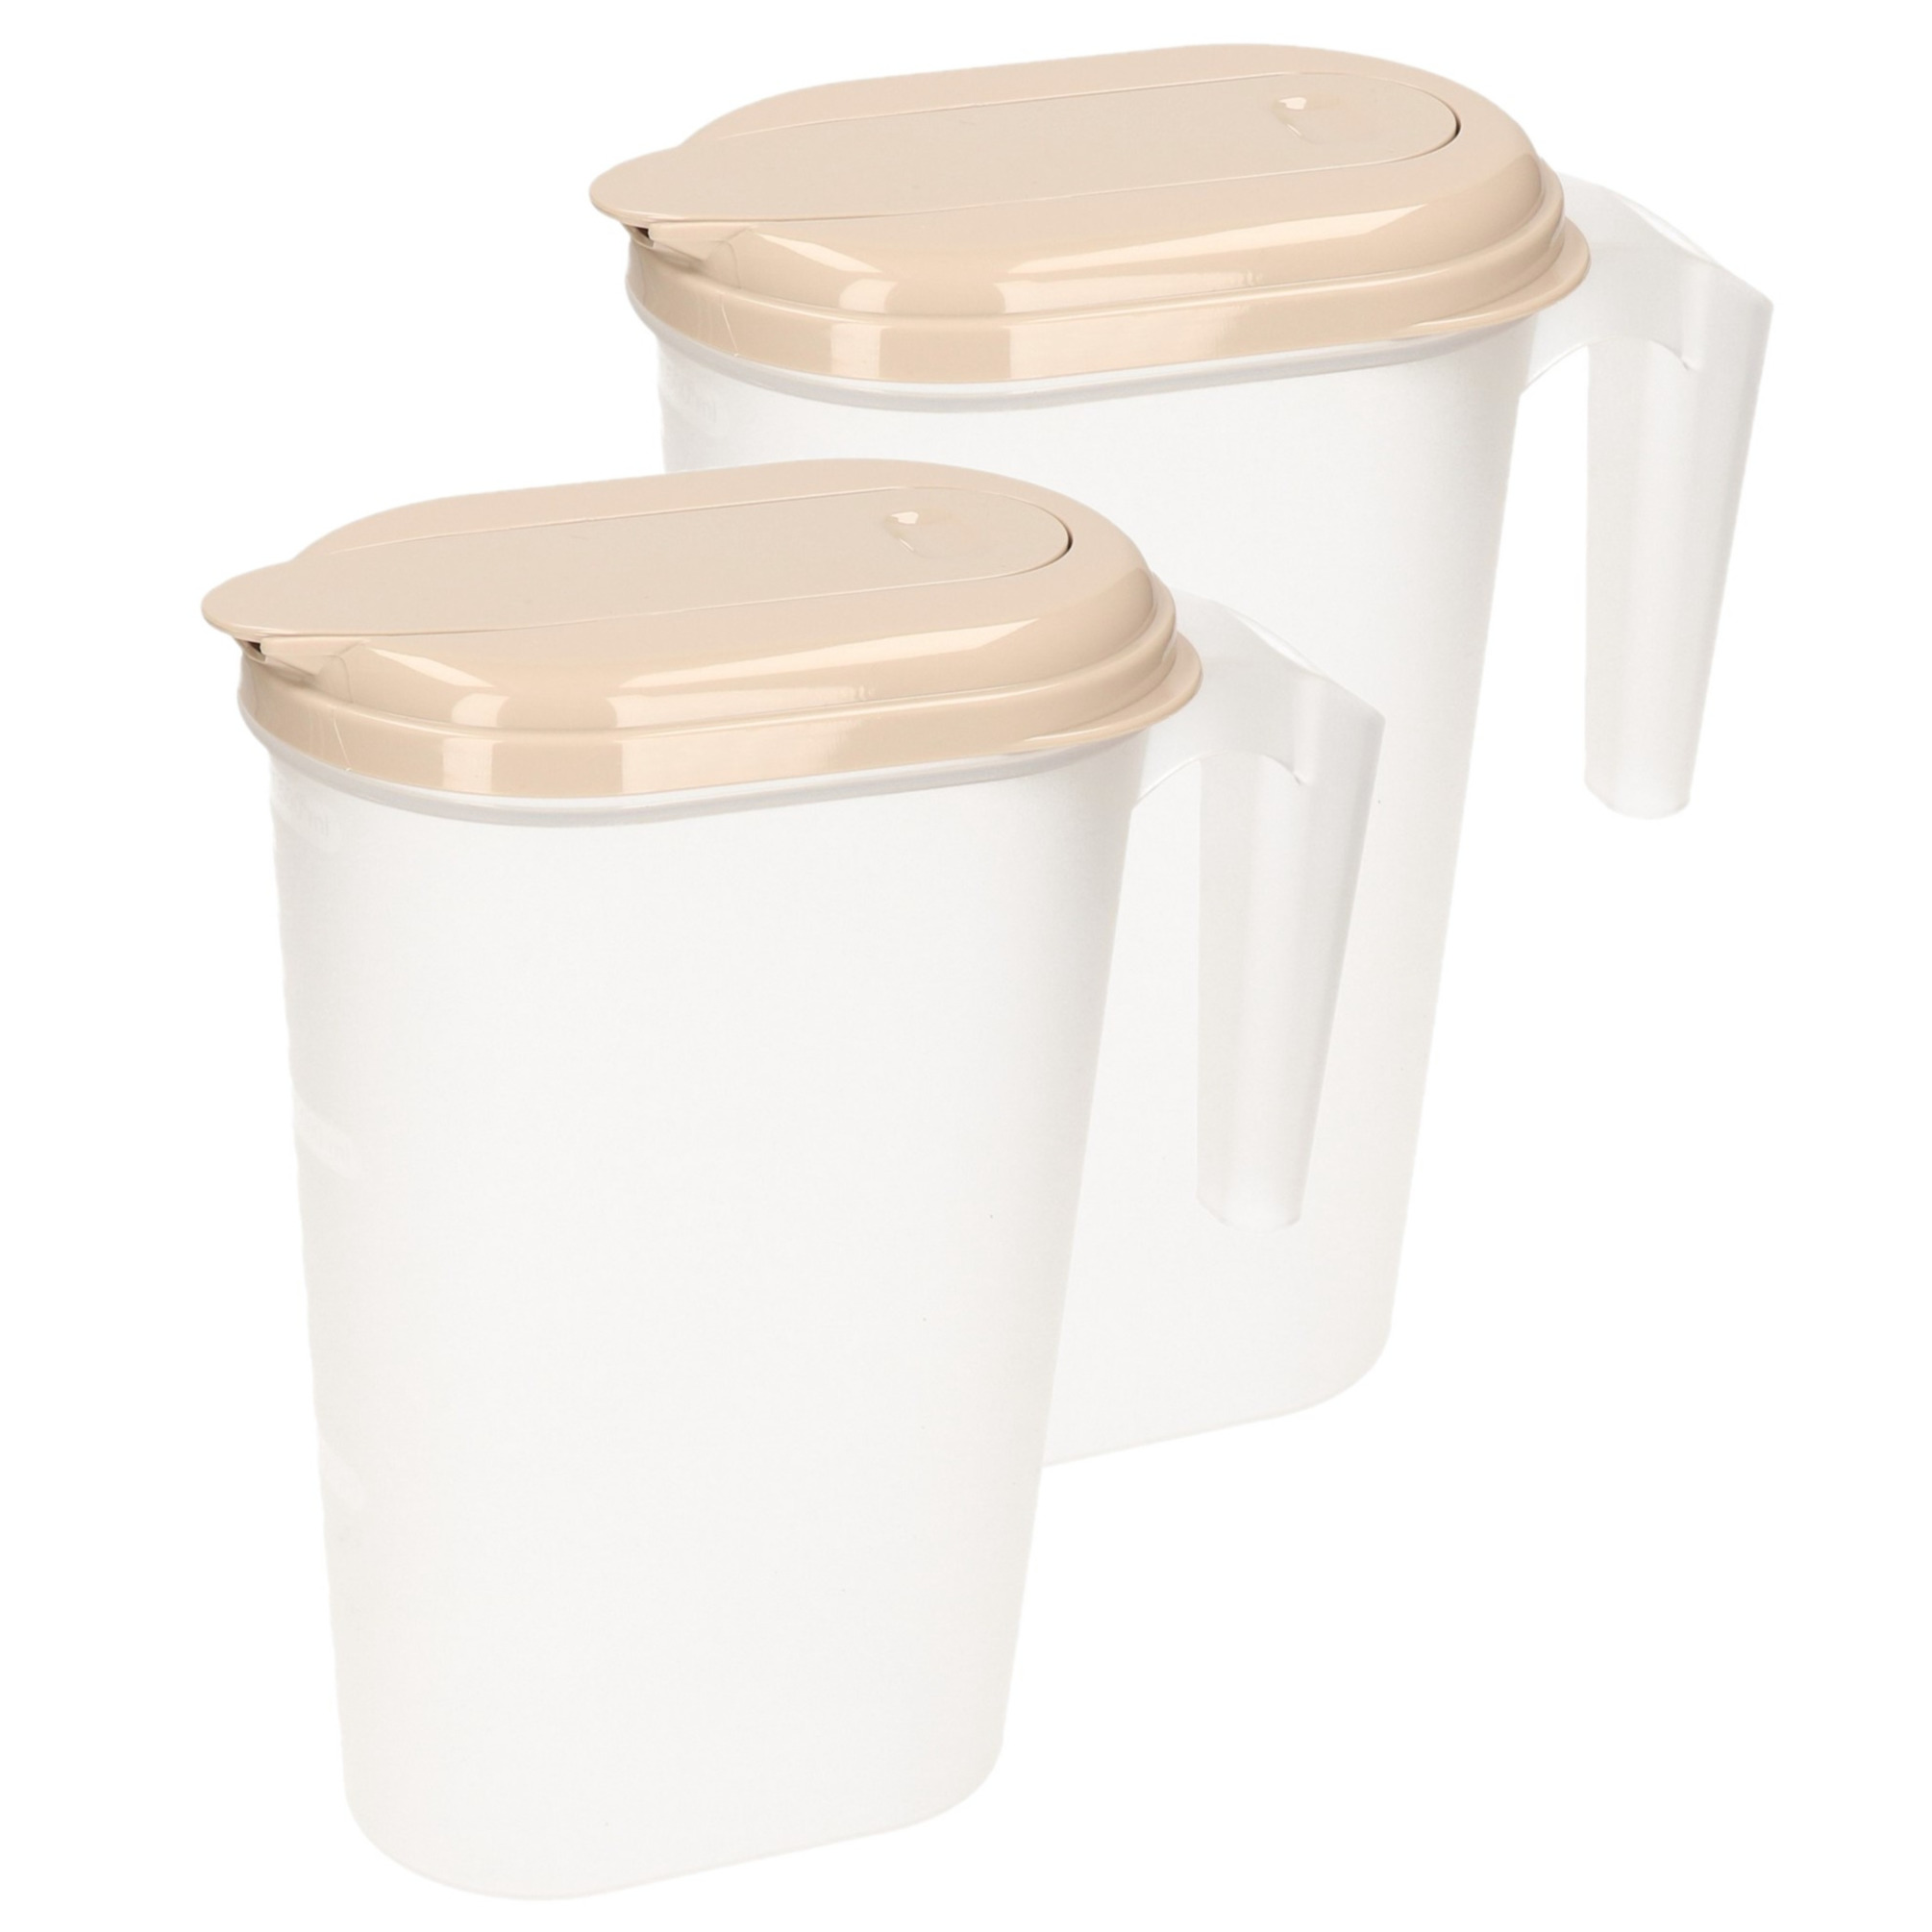 PlasticForte 2x stuks waterkan/sapkan transparant/taupe met deksel 1.6 liter kunststof -